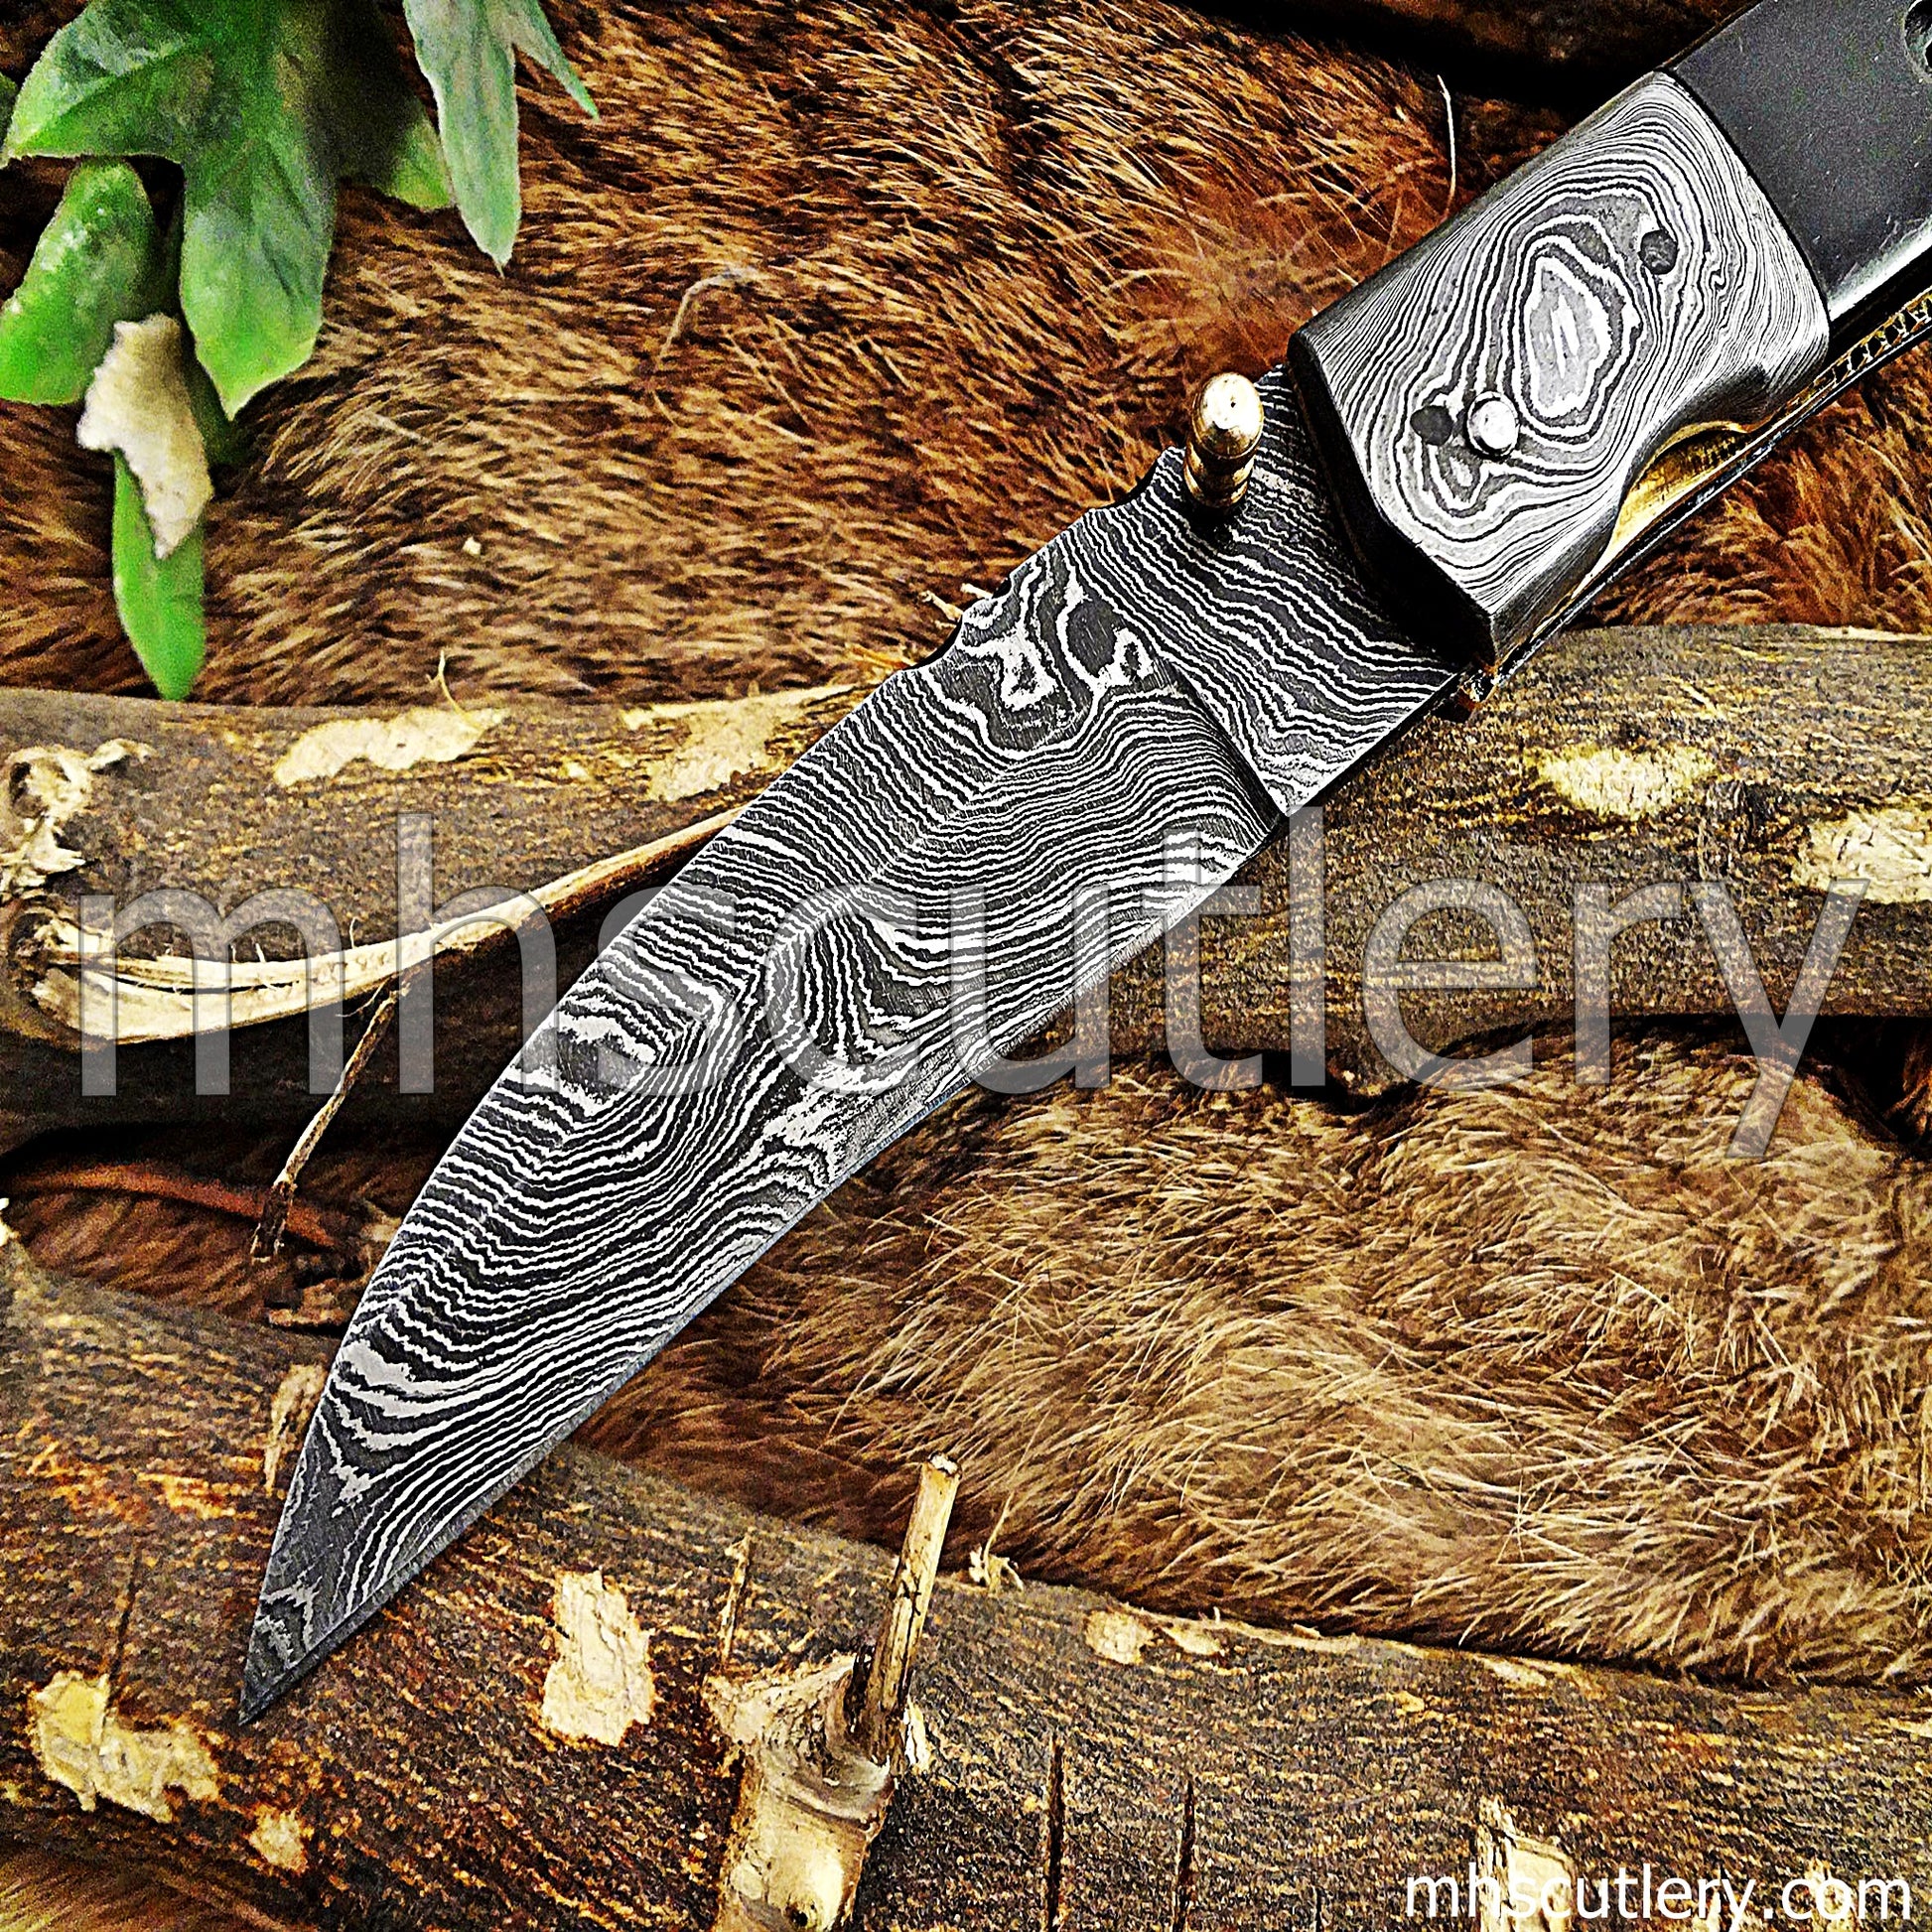 Damascus Steel Tactical Pocket Knife / Bull Horn Handle | mhscutlery